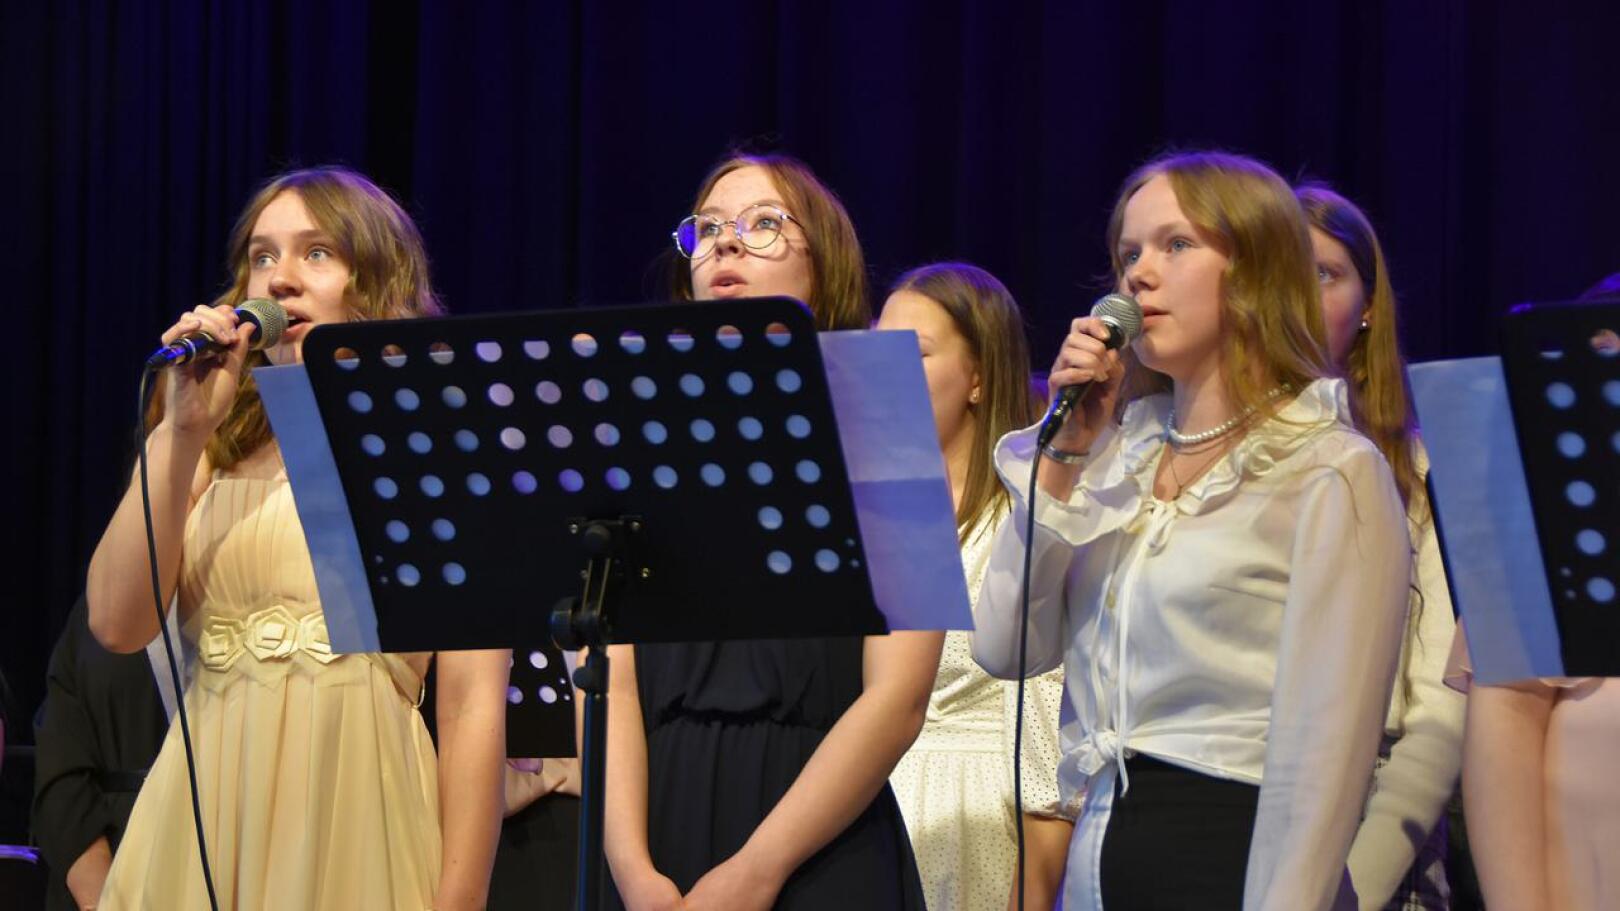 Haapaveden uuden koulun avajaisissa esitettiin musiikkia puheiden lomassa. Musiikista vastasivat lukion ja yläkoulun oppilaat. Kuvassa Hilda Karsikas, Jonna Hänninen ja Aliisa Mehtälä.